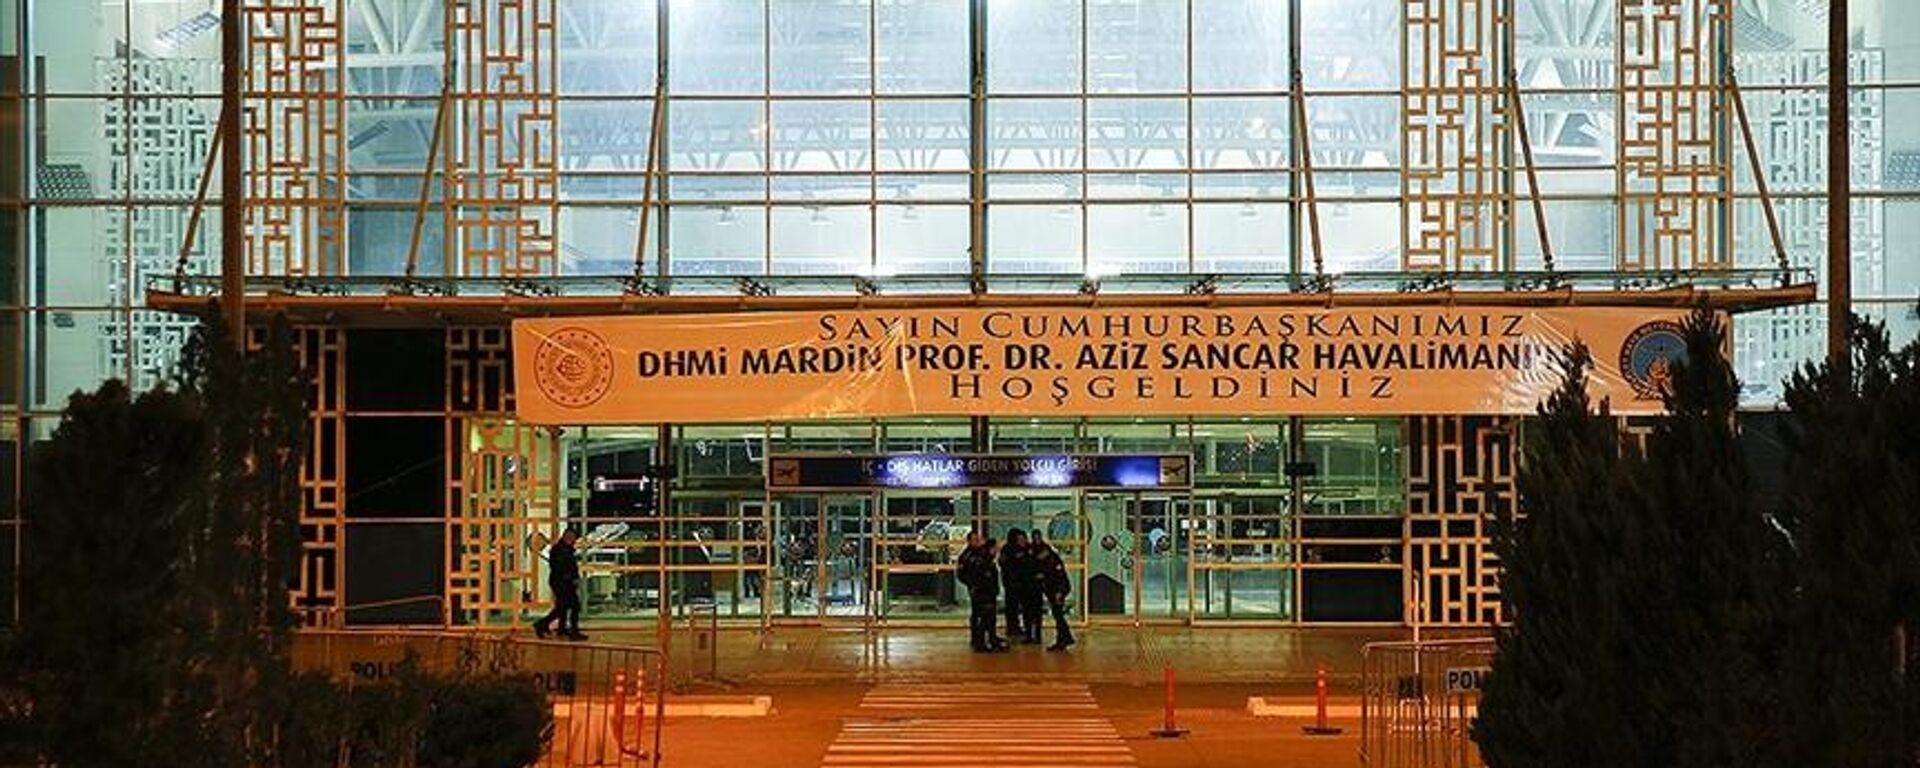 Cumhurbaşkanı Recep Tayyip Erdoğan’ın imzasıyla Resmi Gazete’de yayımlanan Cumhurbaşkanı kararına göre Mardin Havalimanı'nın ismi “Mardin Prof. Dr. Aziz Sancar Havalimanı” olarak değiştirildi. - Sputnik Türkiye, 1920, 26.01.2023